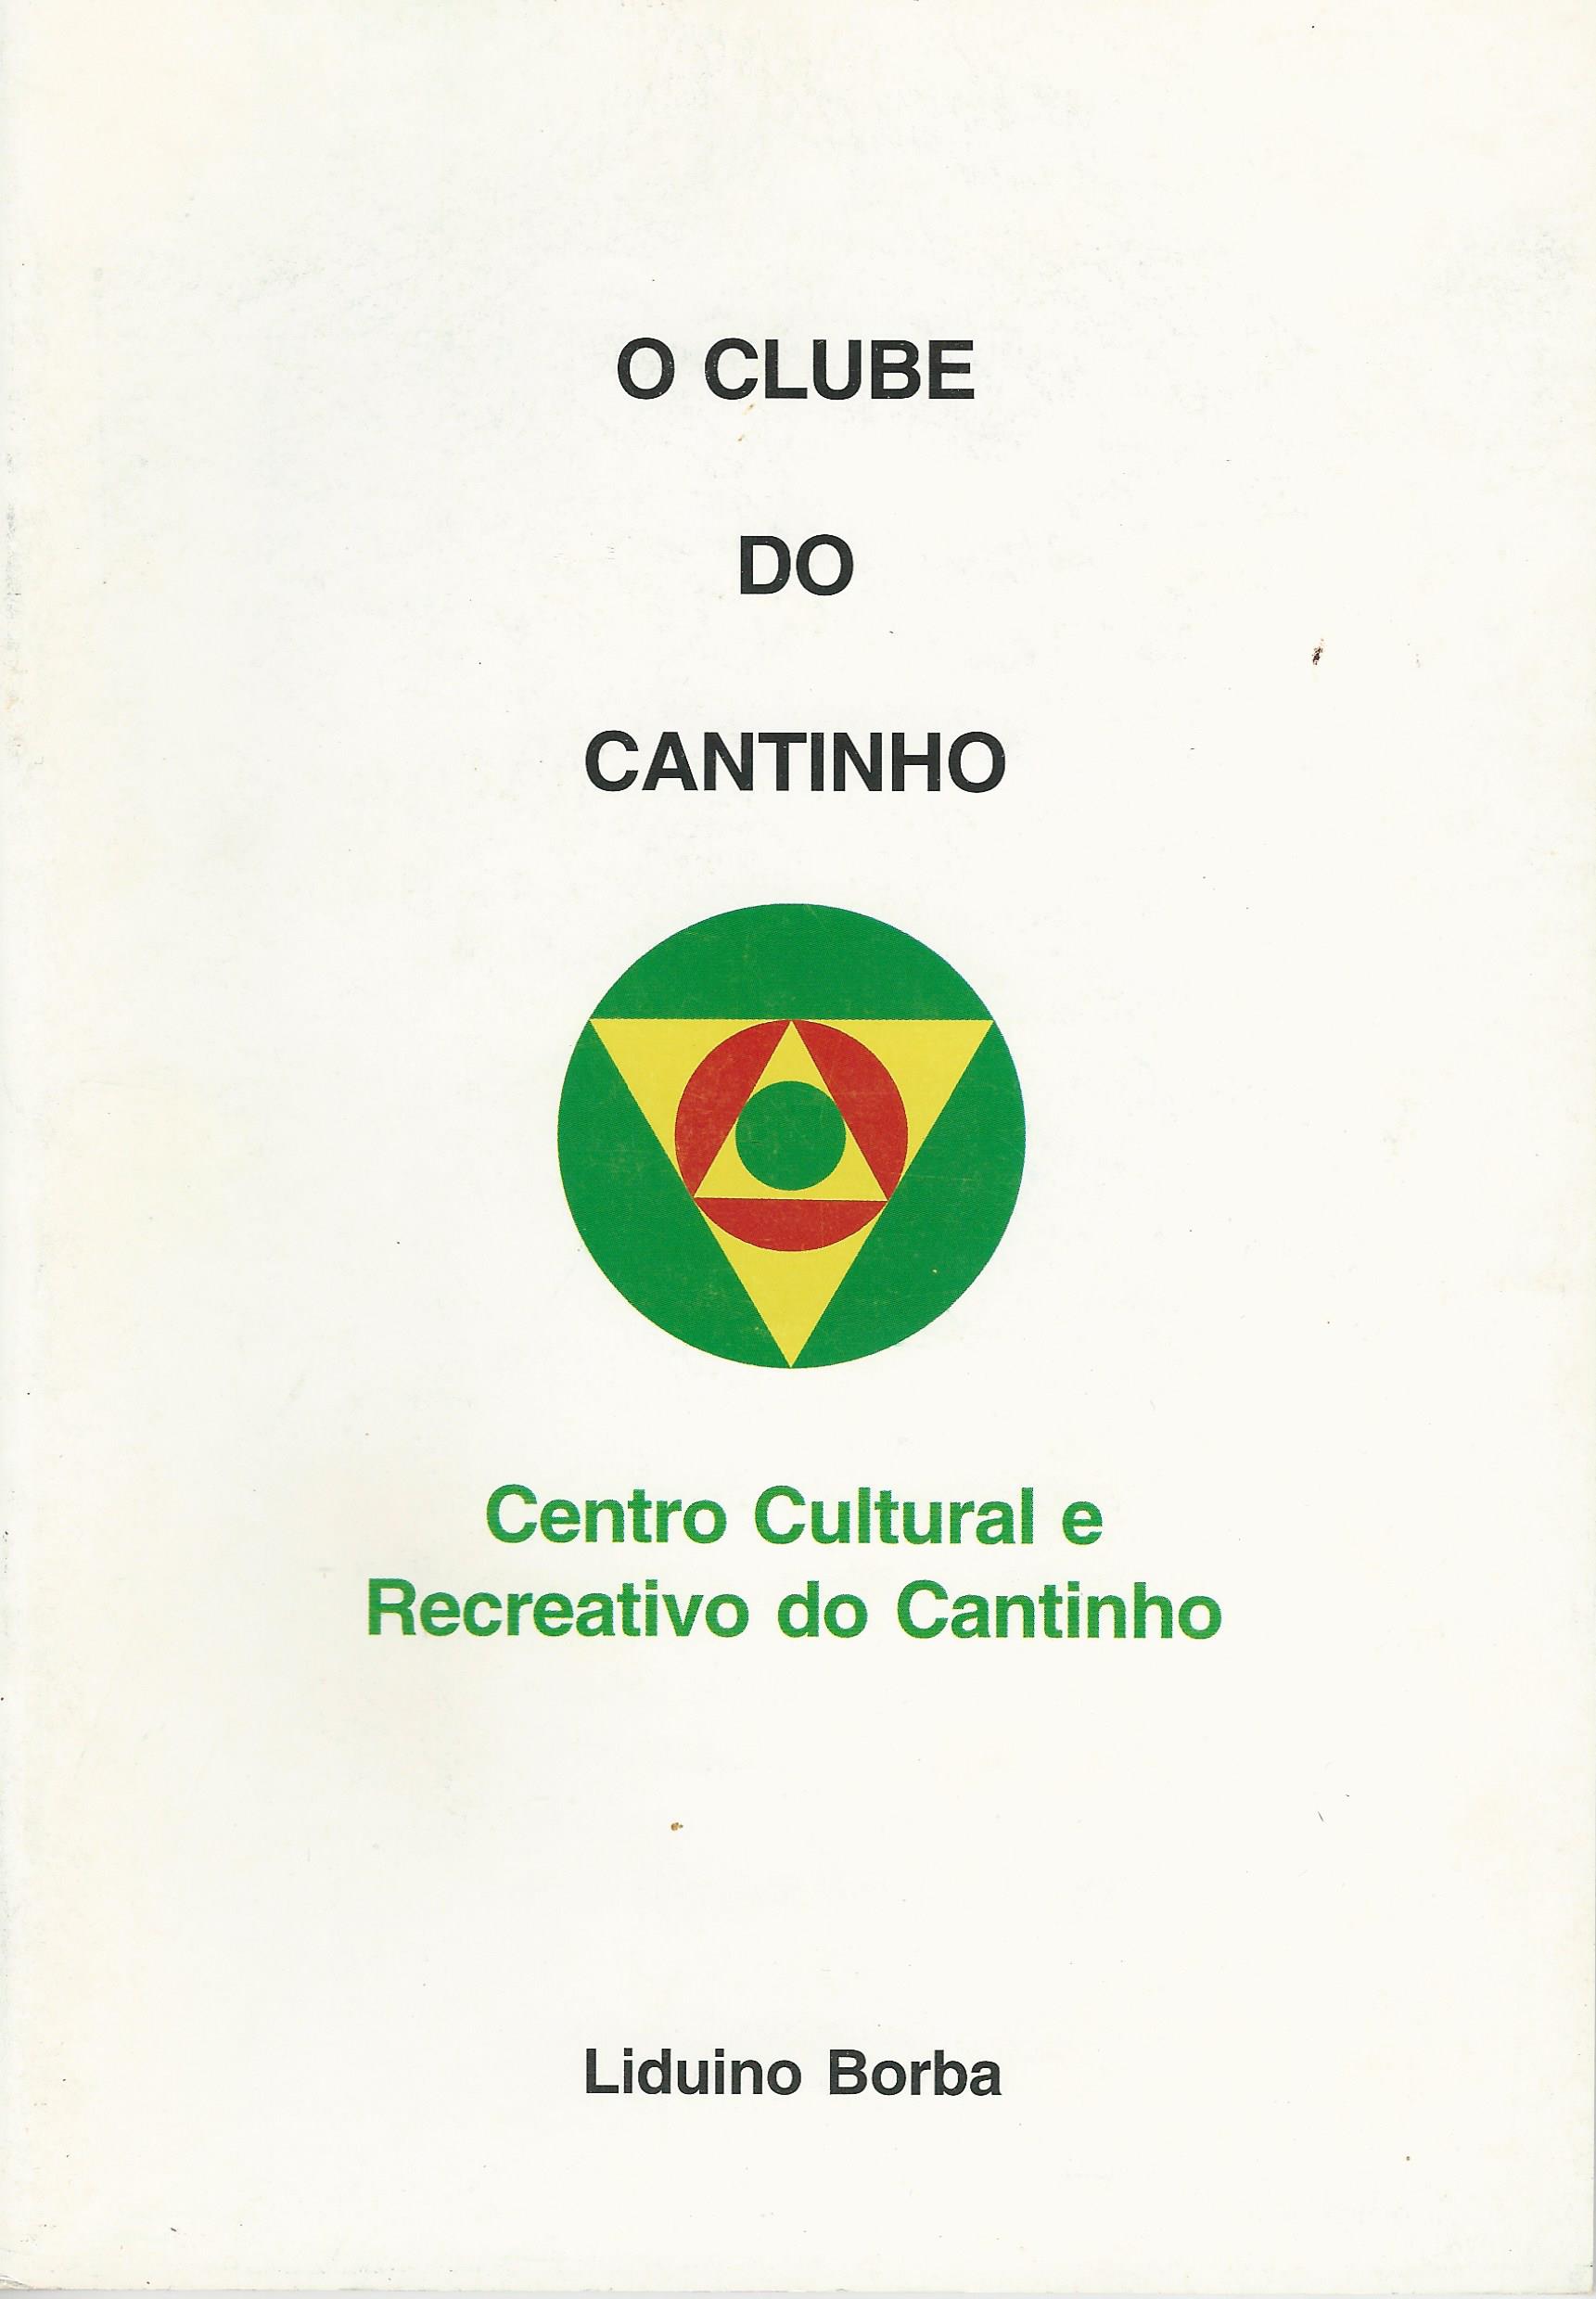 000 1001 Clube do Cantinho, 2007